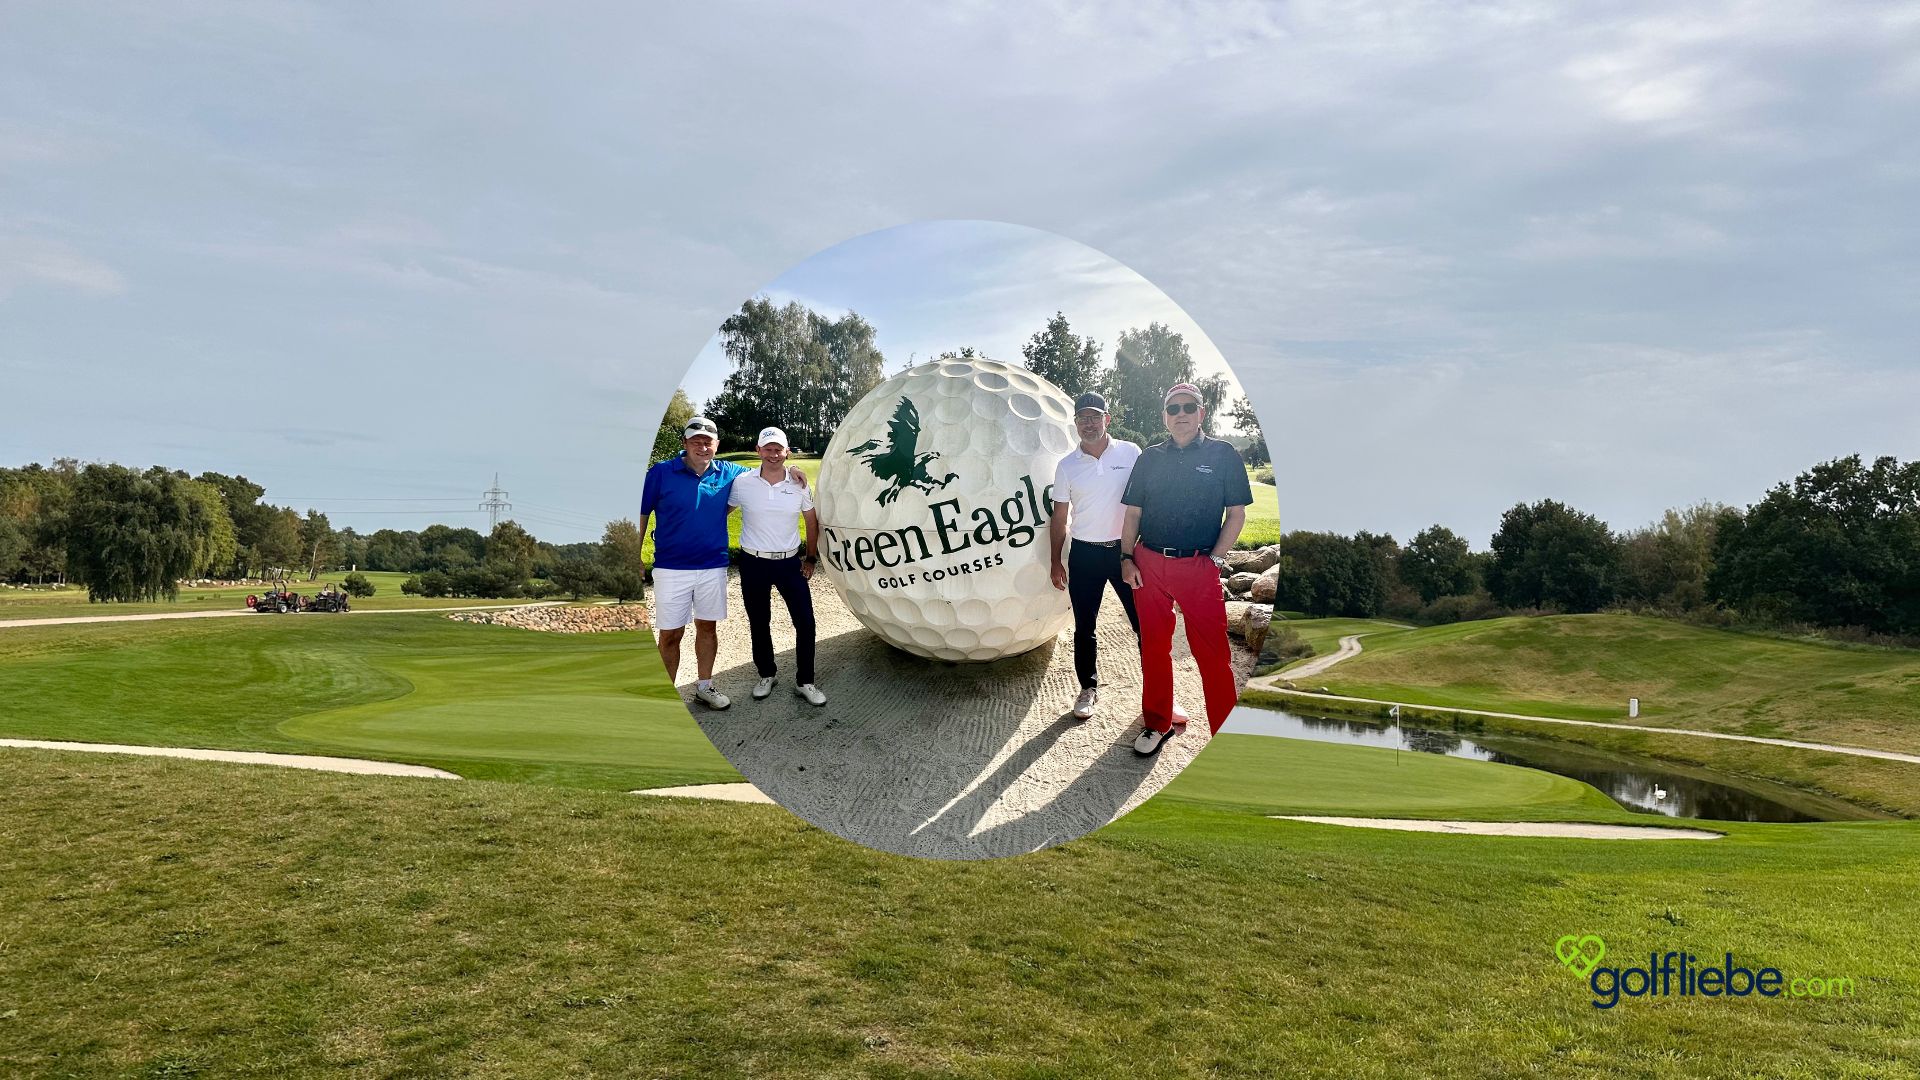 Michael, Andreas, Fred und Matthias Zu Besuch auf dem Green Eagle Golf Course Porsche Nord Course Golfliebe.com